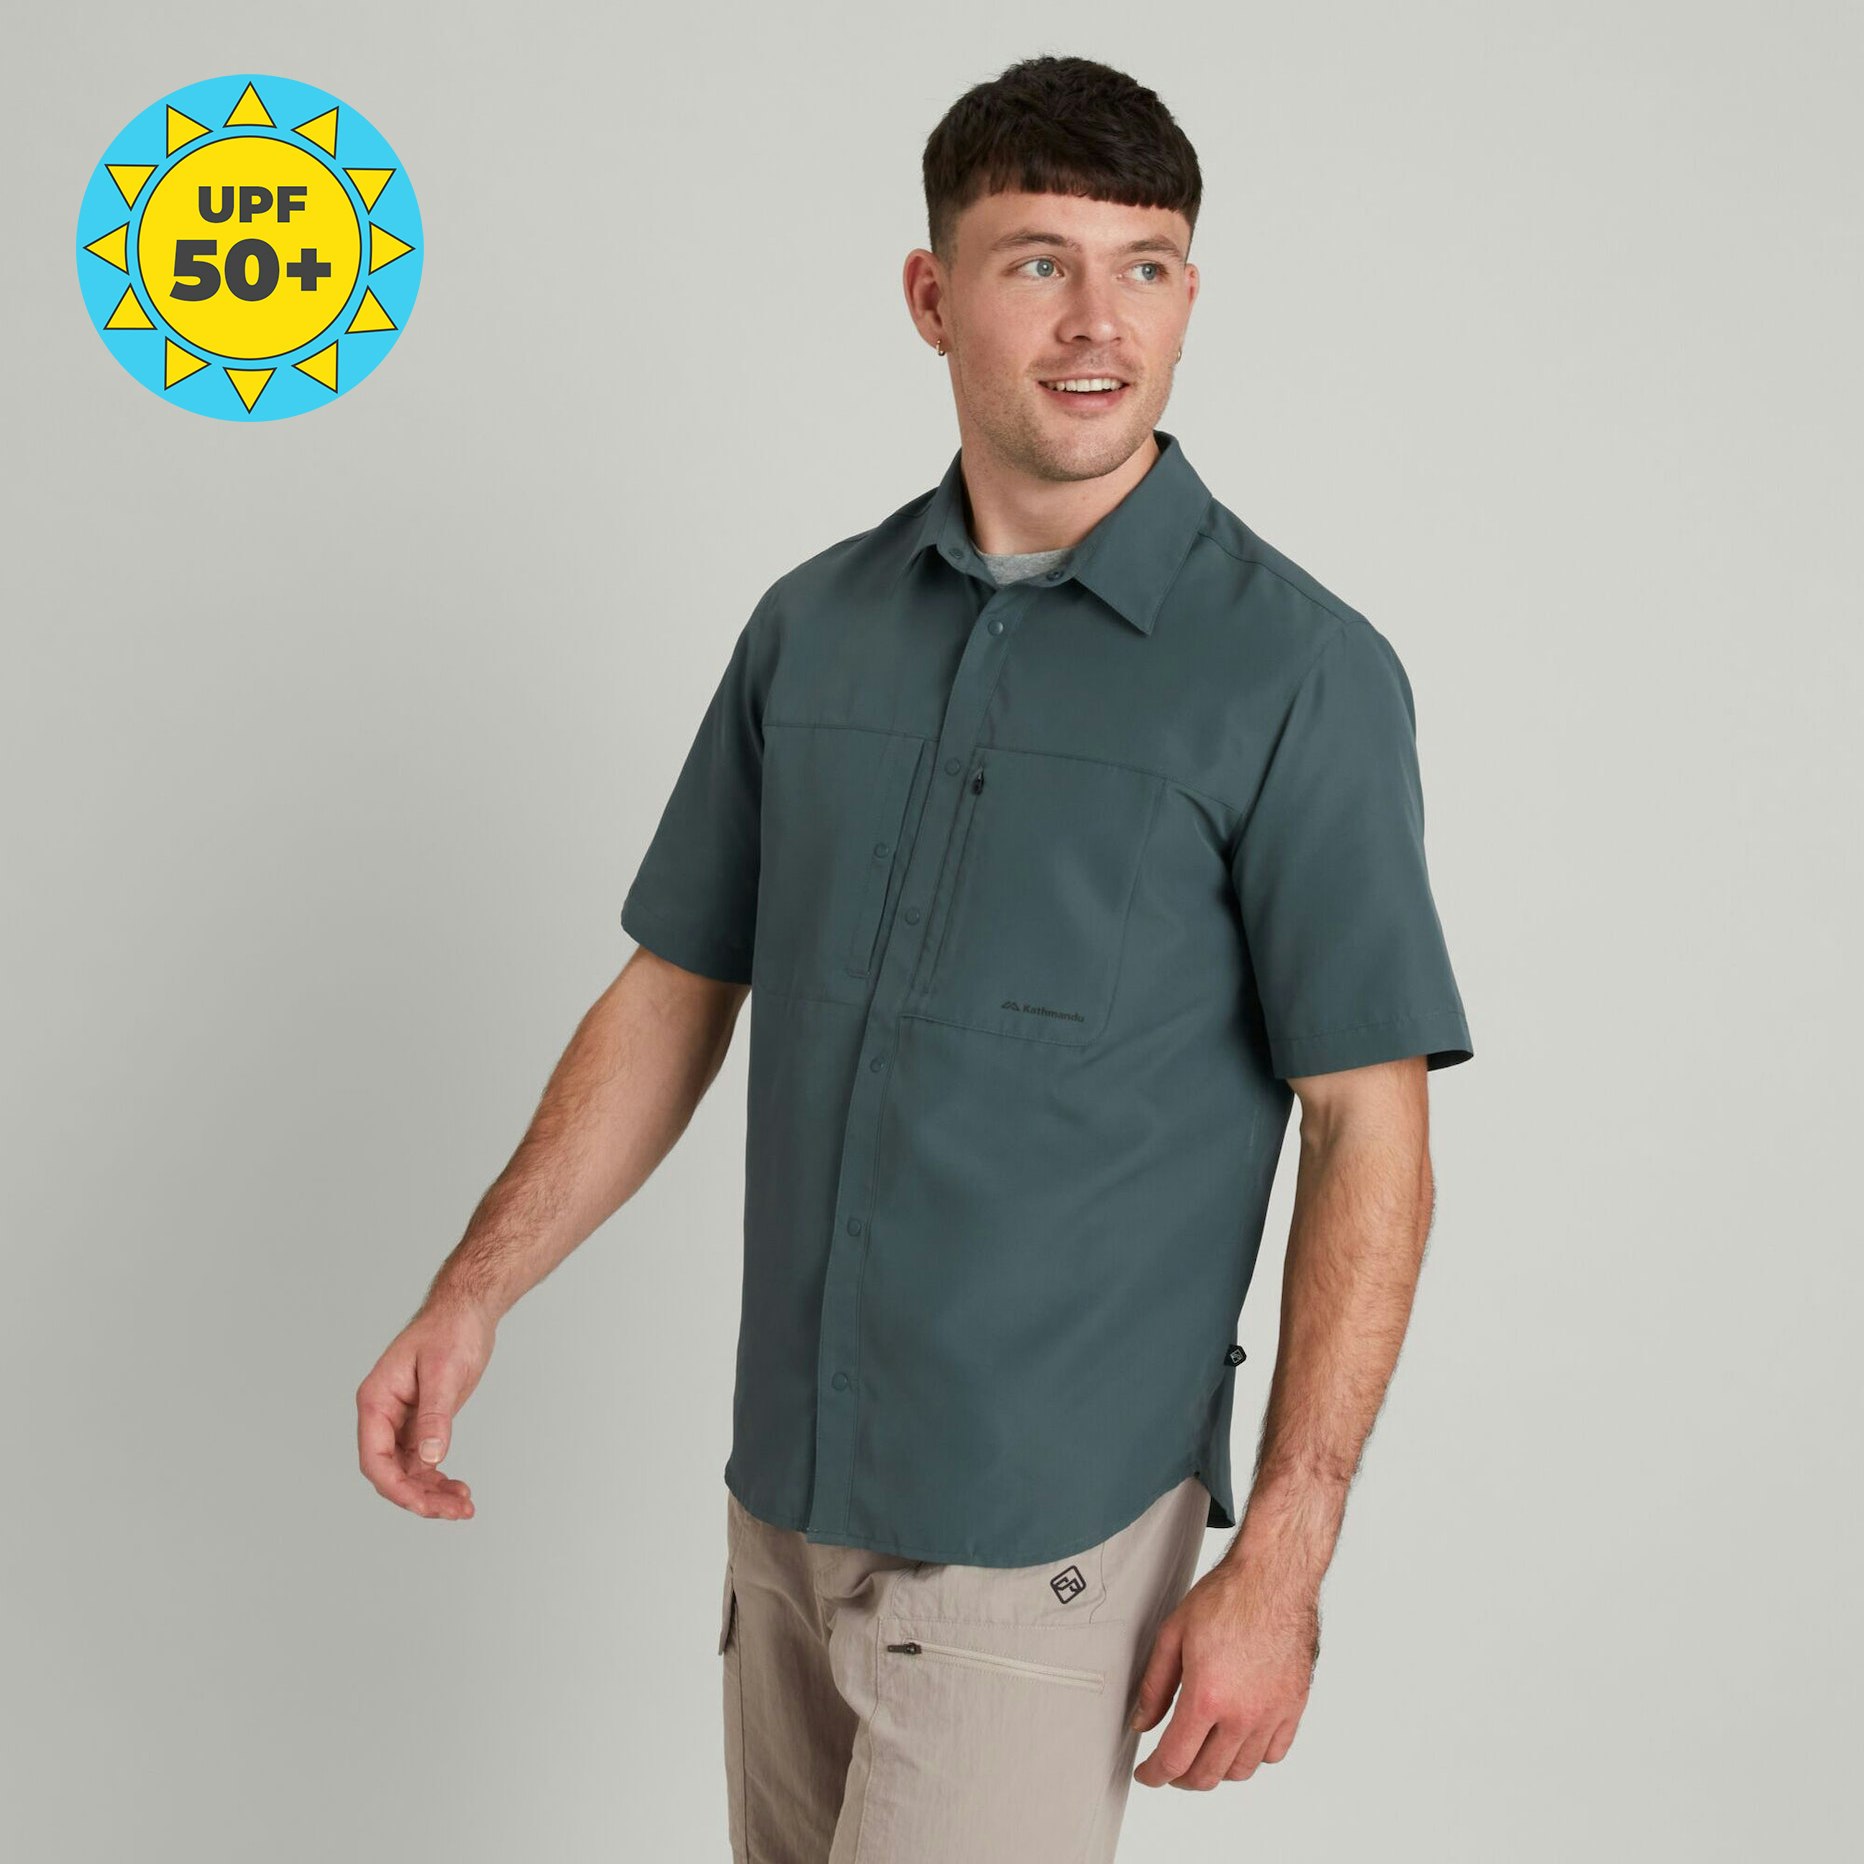 SUN-Scout Upf Men's Short Sleeve Shirt